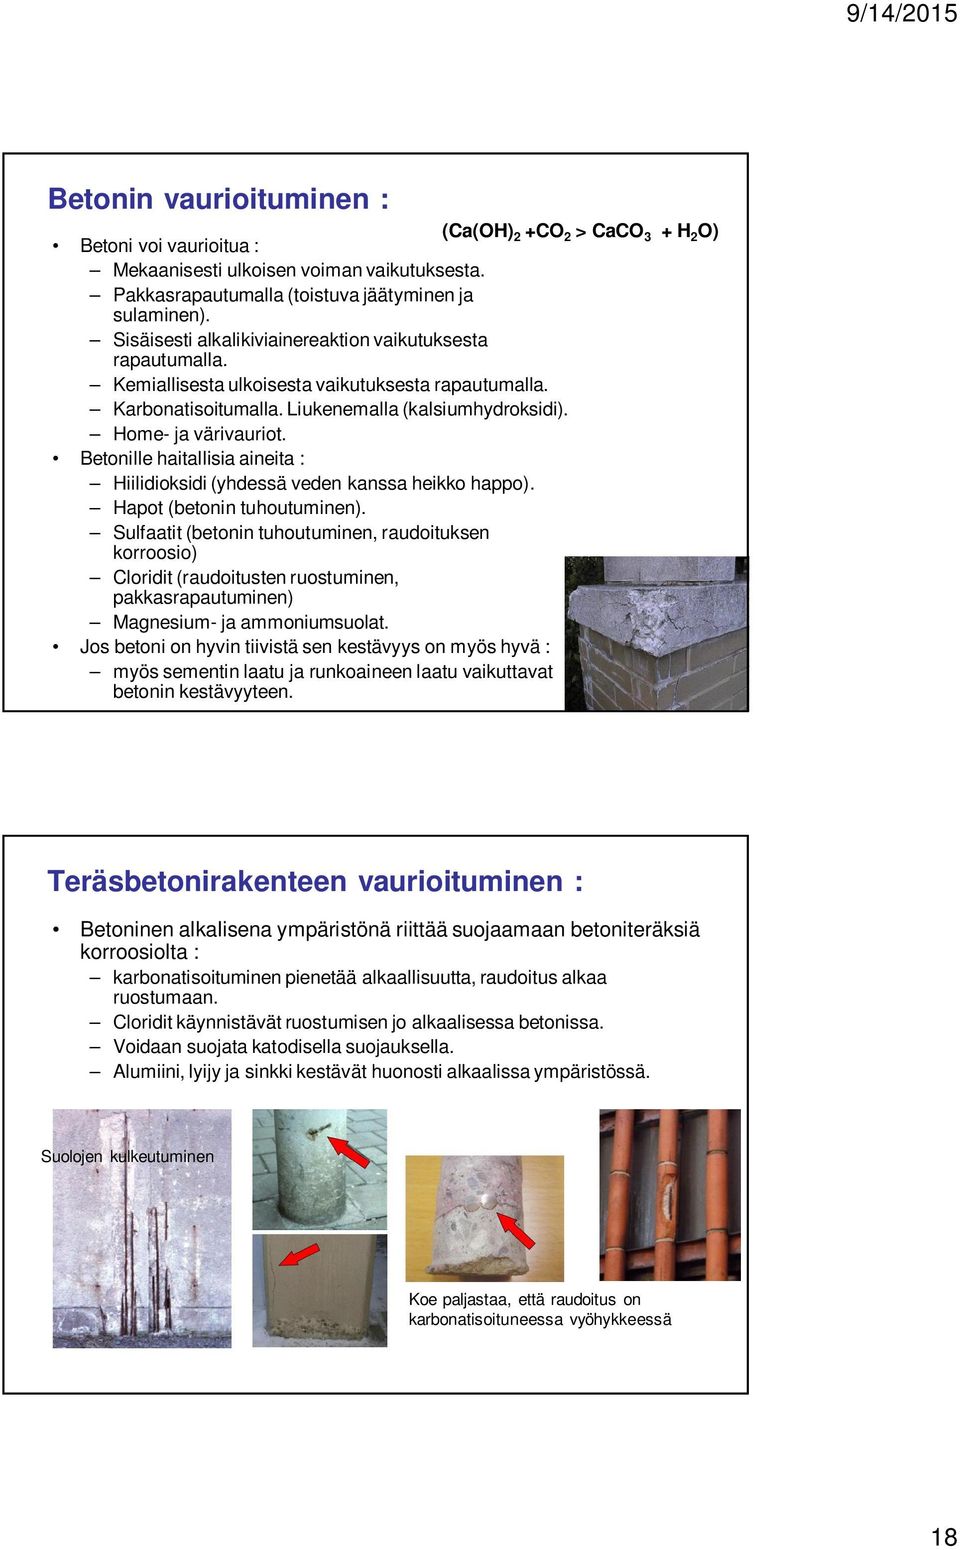 Betonille haitallisia aineita : Hiilidioksidi (yhdessä veden kanssa heikko happo). Hapot (betonin tuhoutuminen).